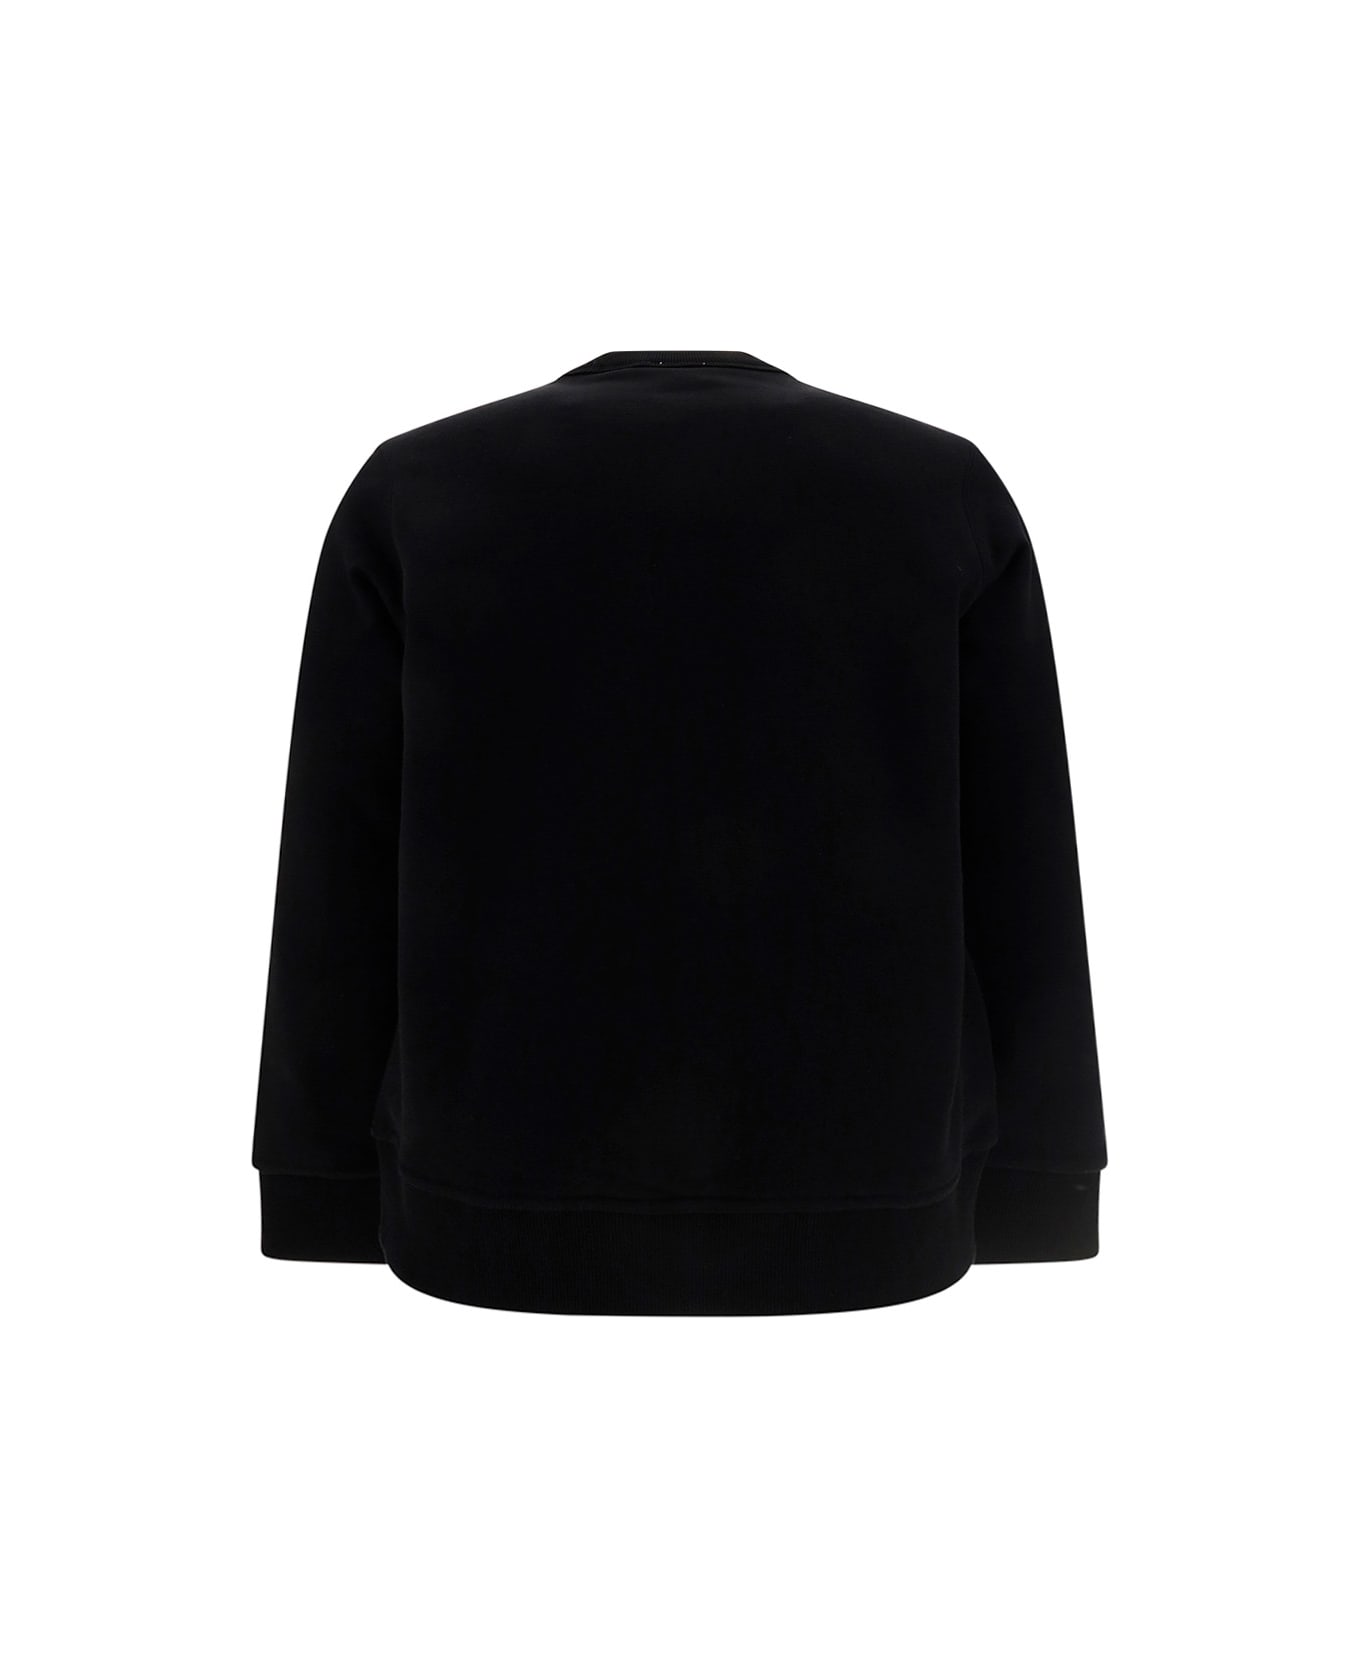 Burberry Burlow Sweatshirt - Black